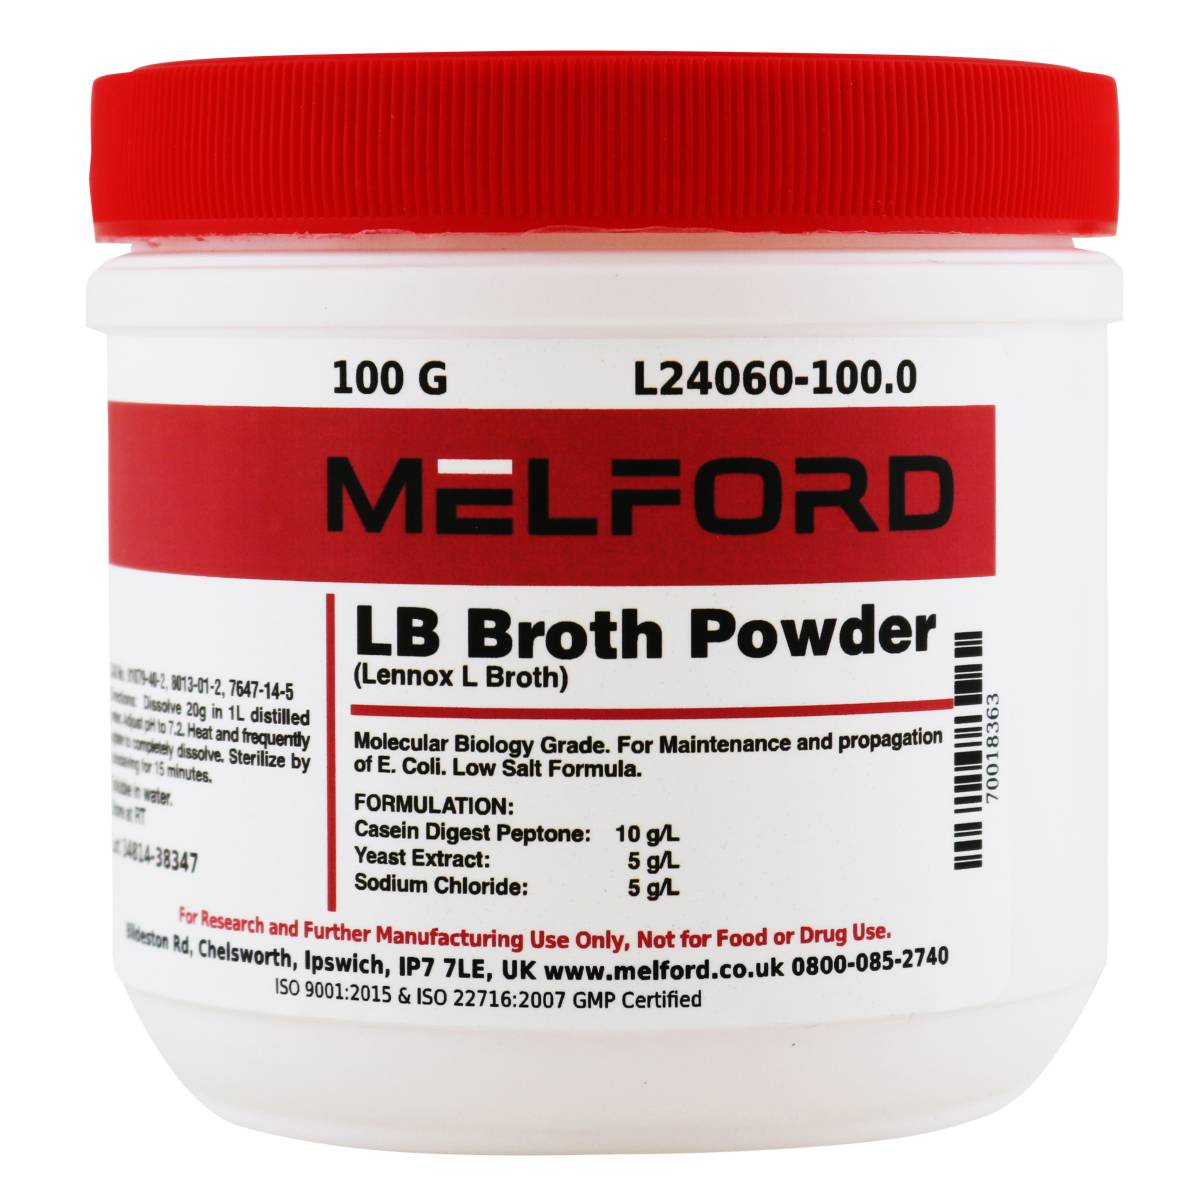 LB Broth Powder [Lennox L Broth], 100 Grams